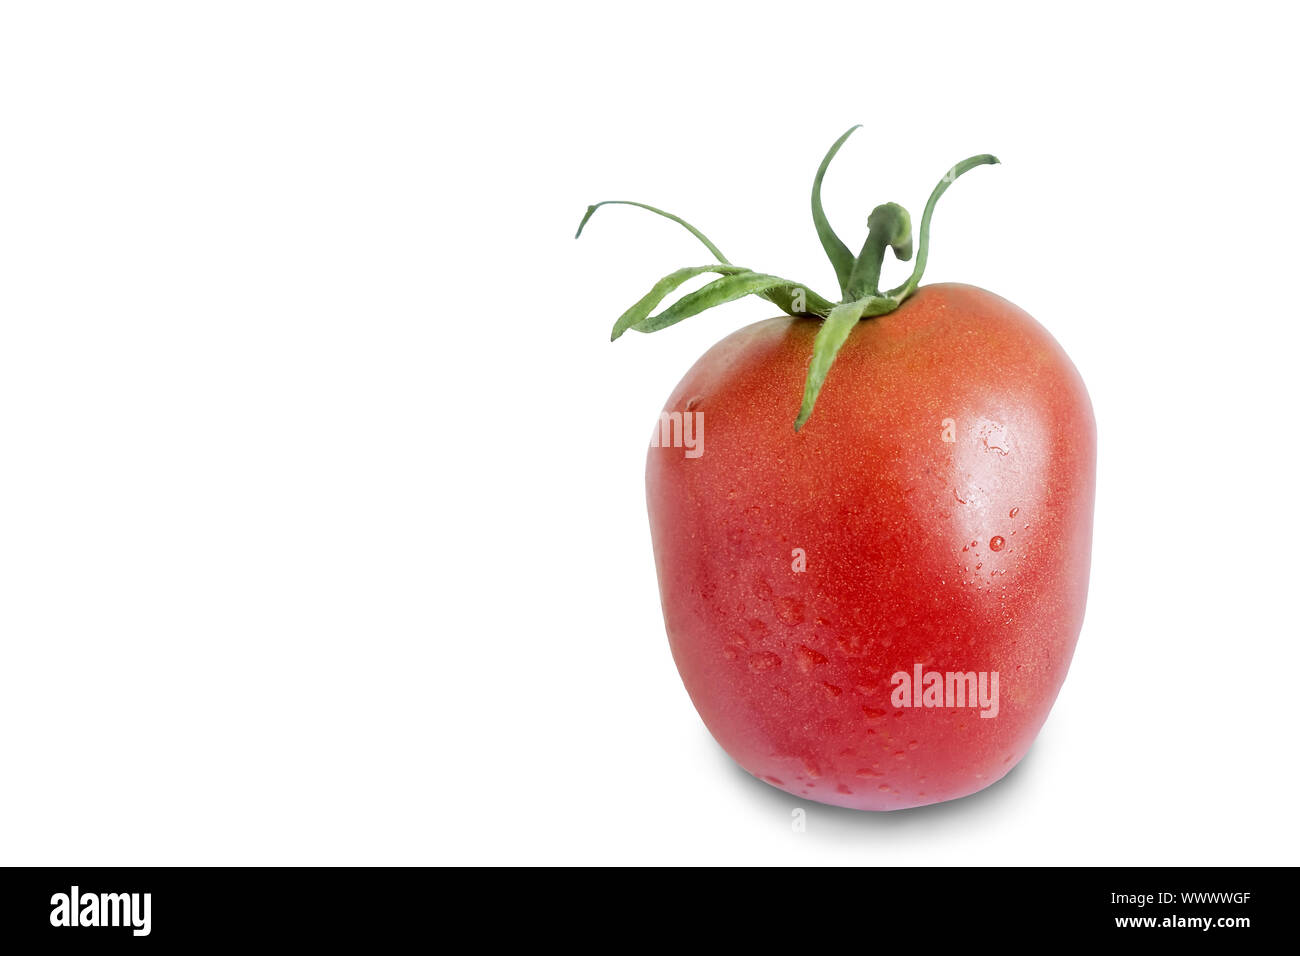 Ripe tomato on a white background. Stock Photo